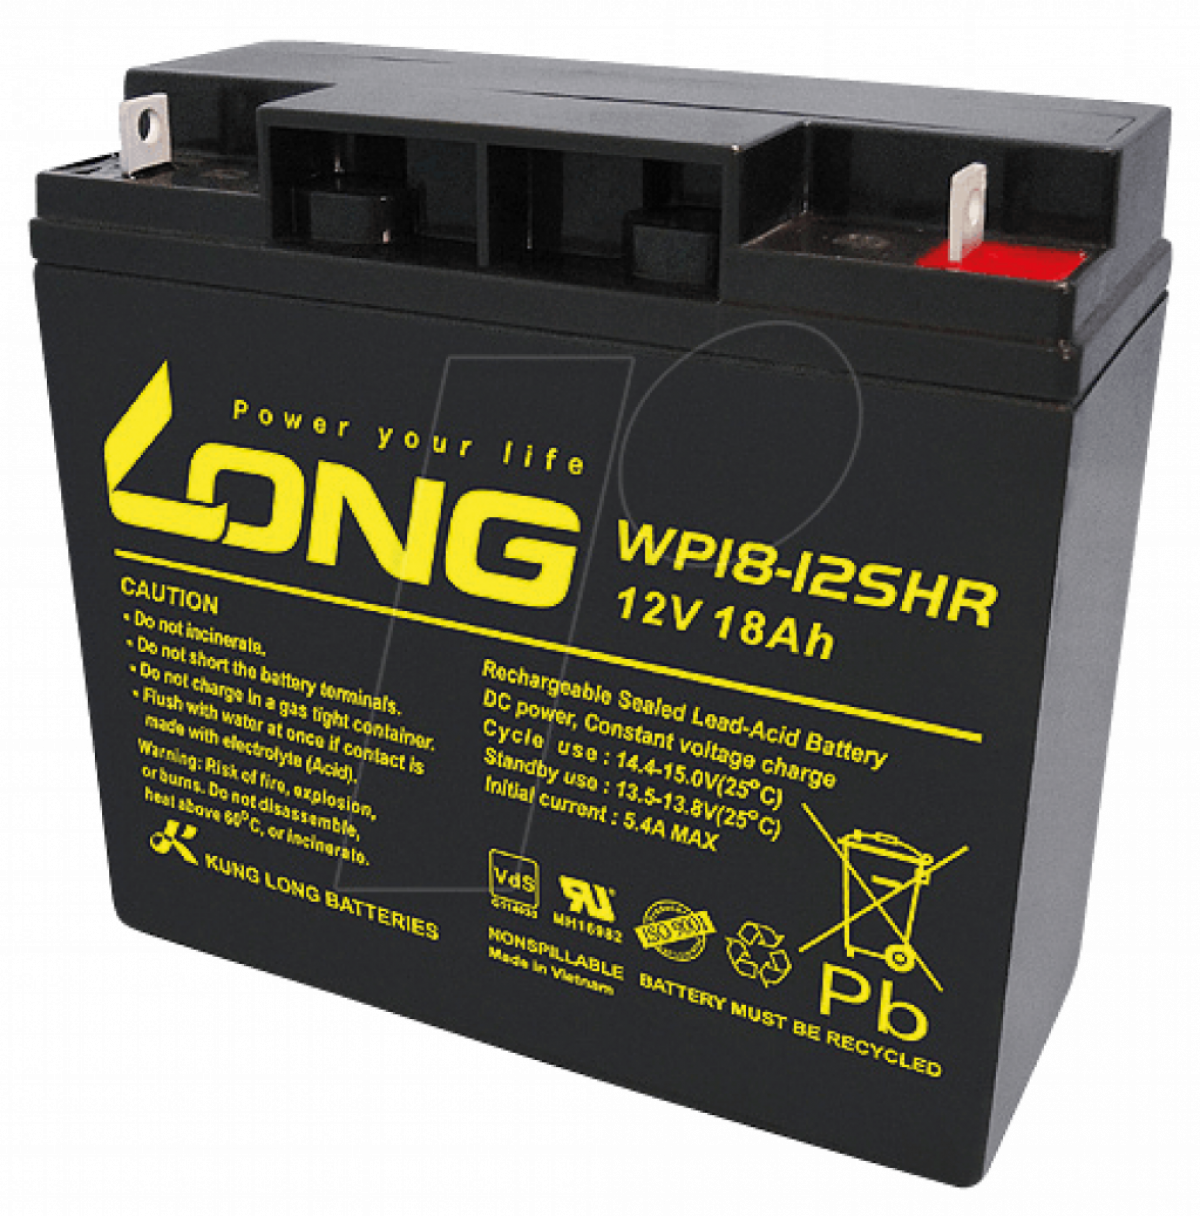 Aкумулаторна батерия Long WP18-12SHR F3, 12V 18Ah, 181 x 76 x 167 ммна ниска цена с бърза доставка